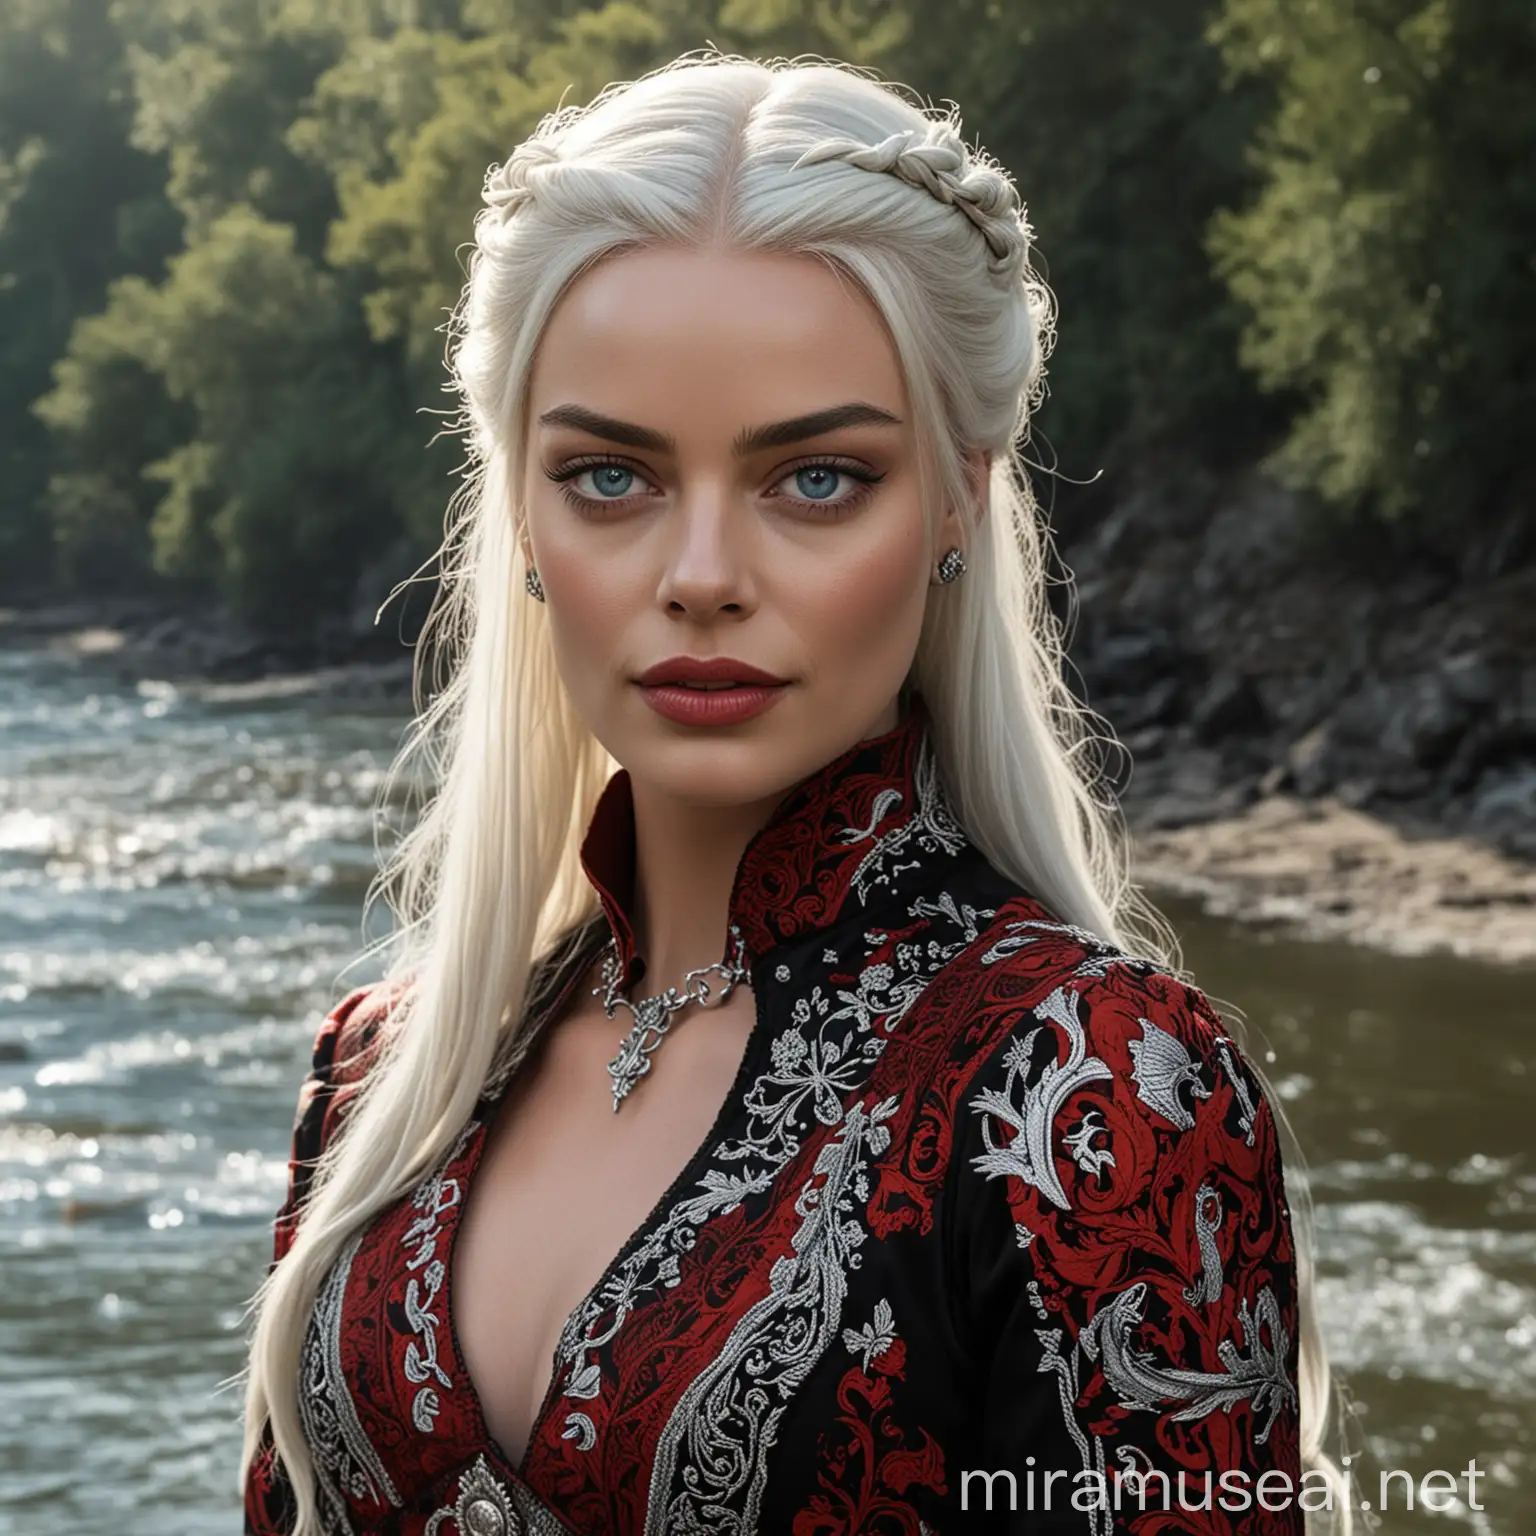 Margot Robbie en tant que princesse de la Maison Targaryen de l'Ancienne Valyria aux yeux clairs avec de longs cheveux blancs-argentés détachés, portant une longue robe noire et rouge typiquement Targaryen, se tenant devant une rivière ensoleillée